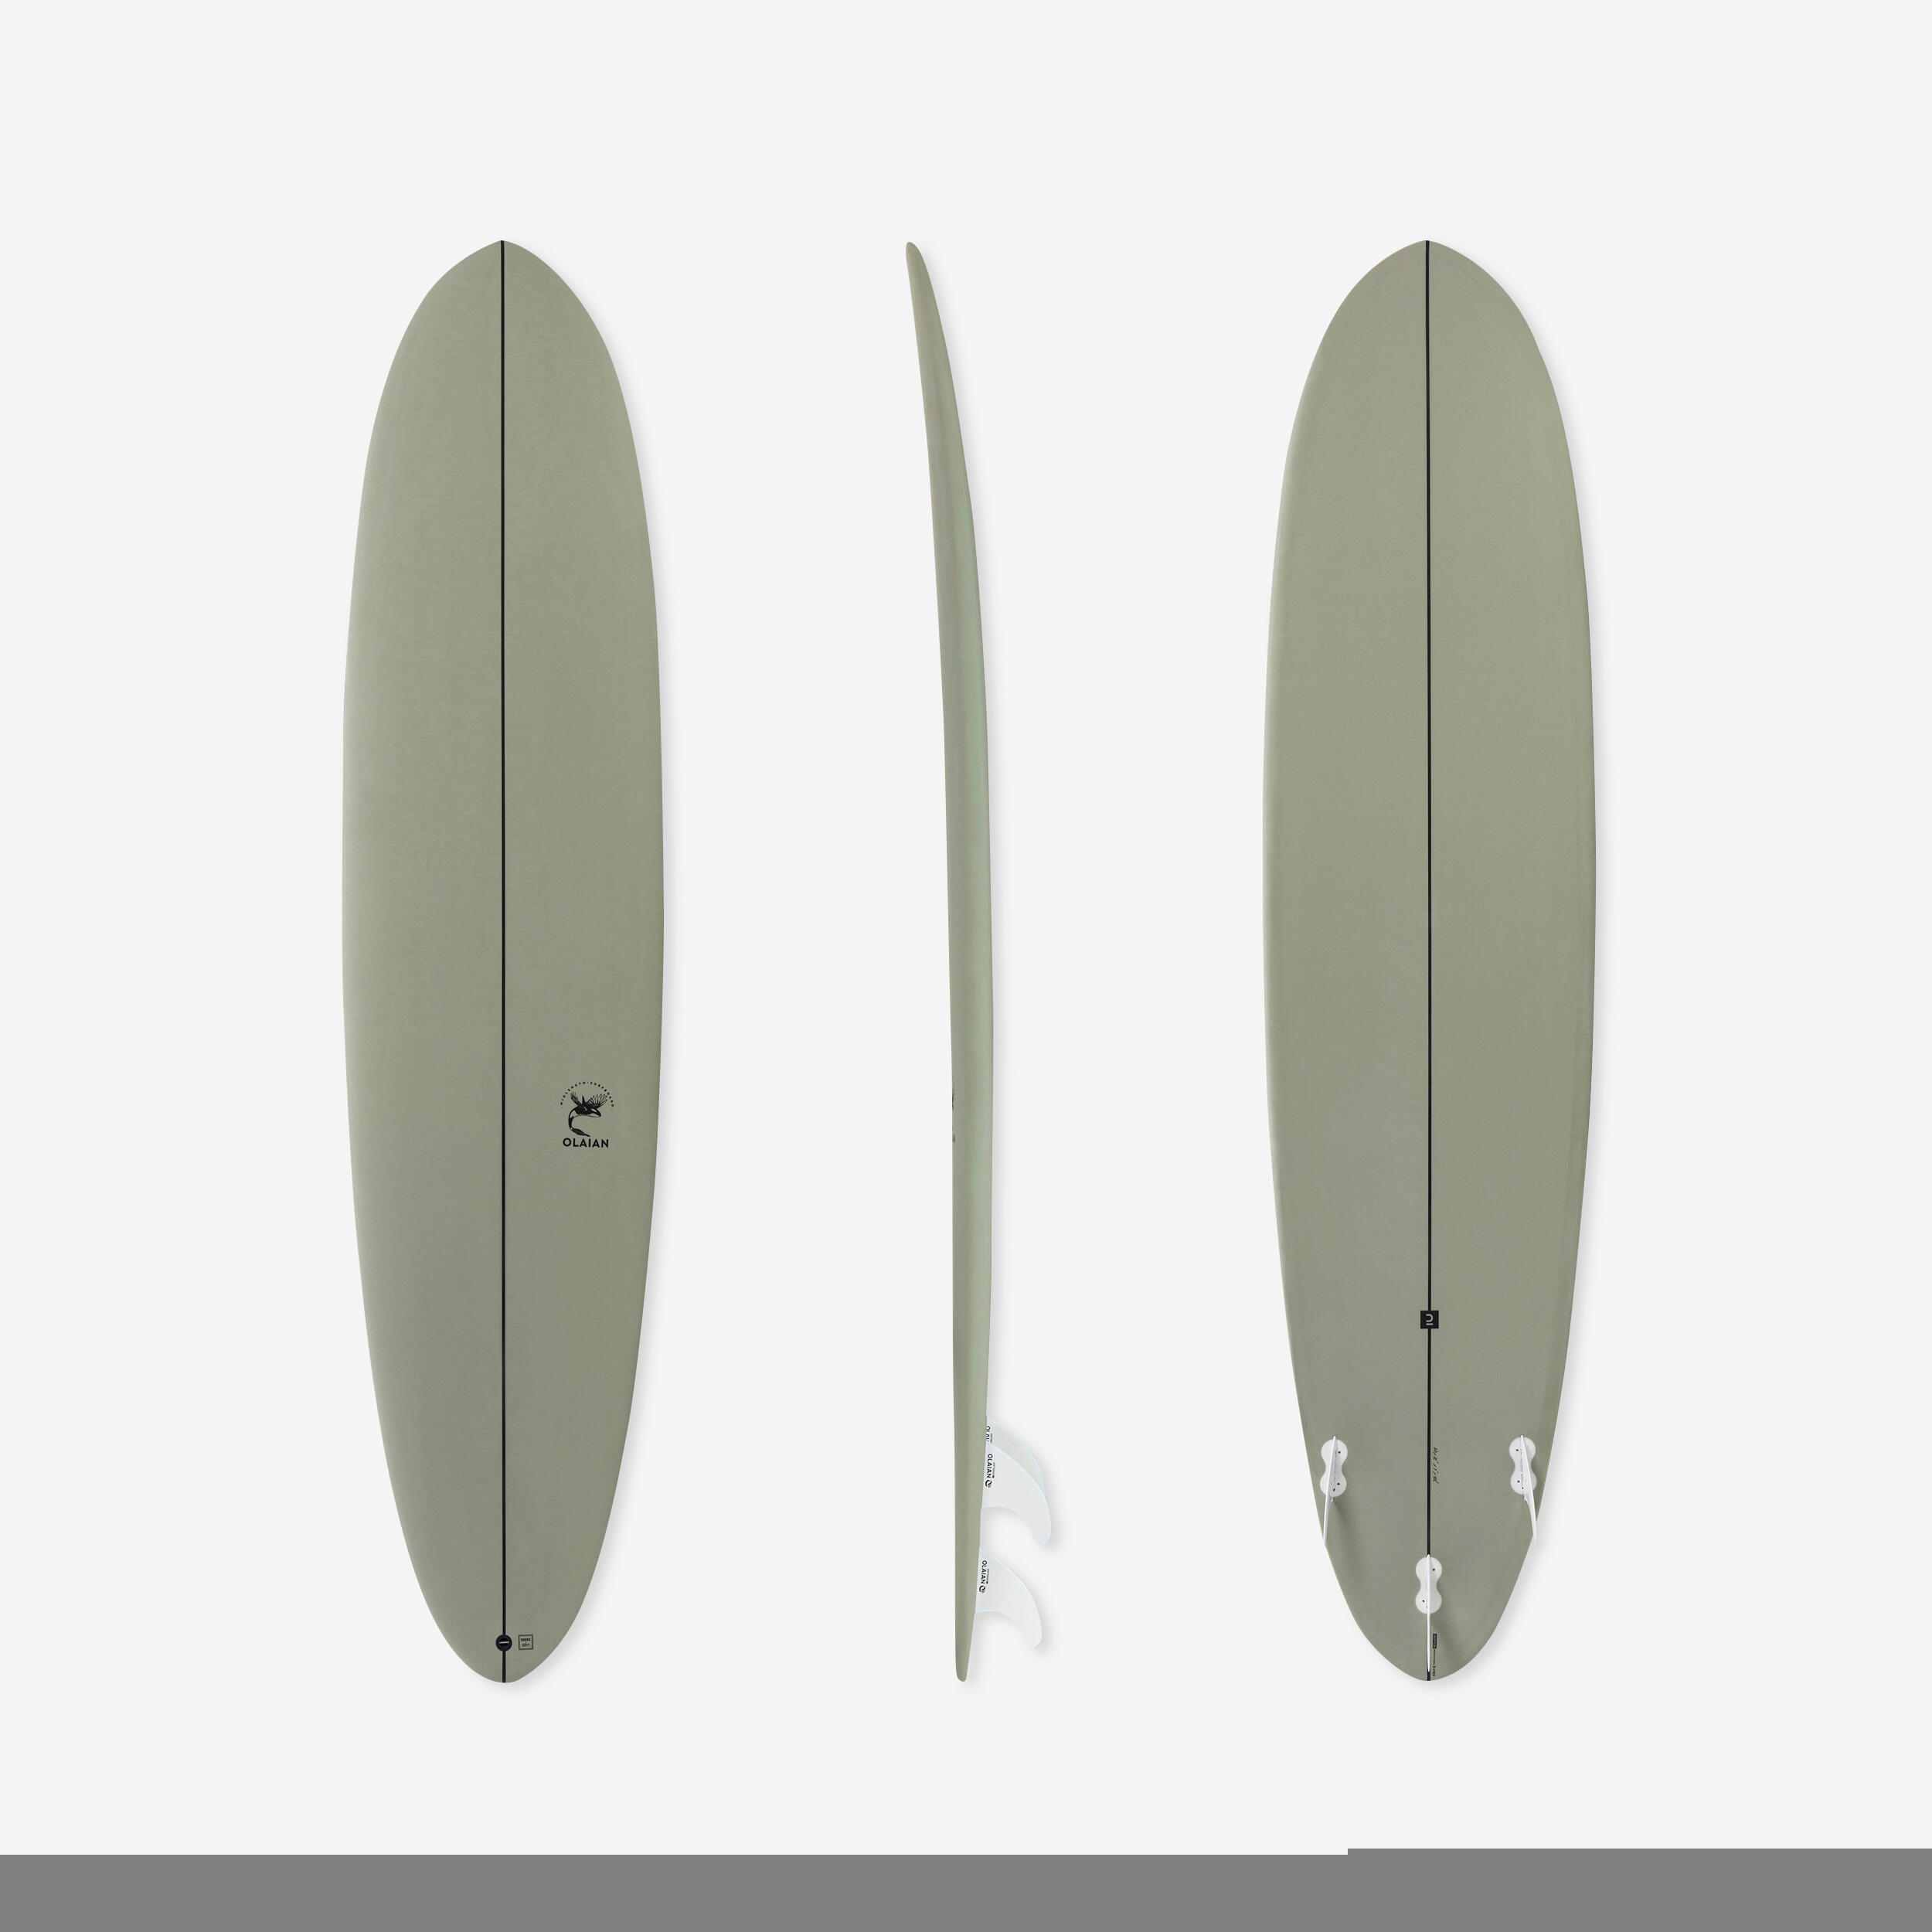 OLAIAN Surfboard 500 Hybrid 8' Lieferung mit 3 Finnen EINHEITSGRÖSSE